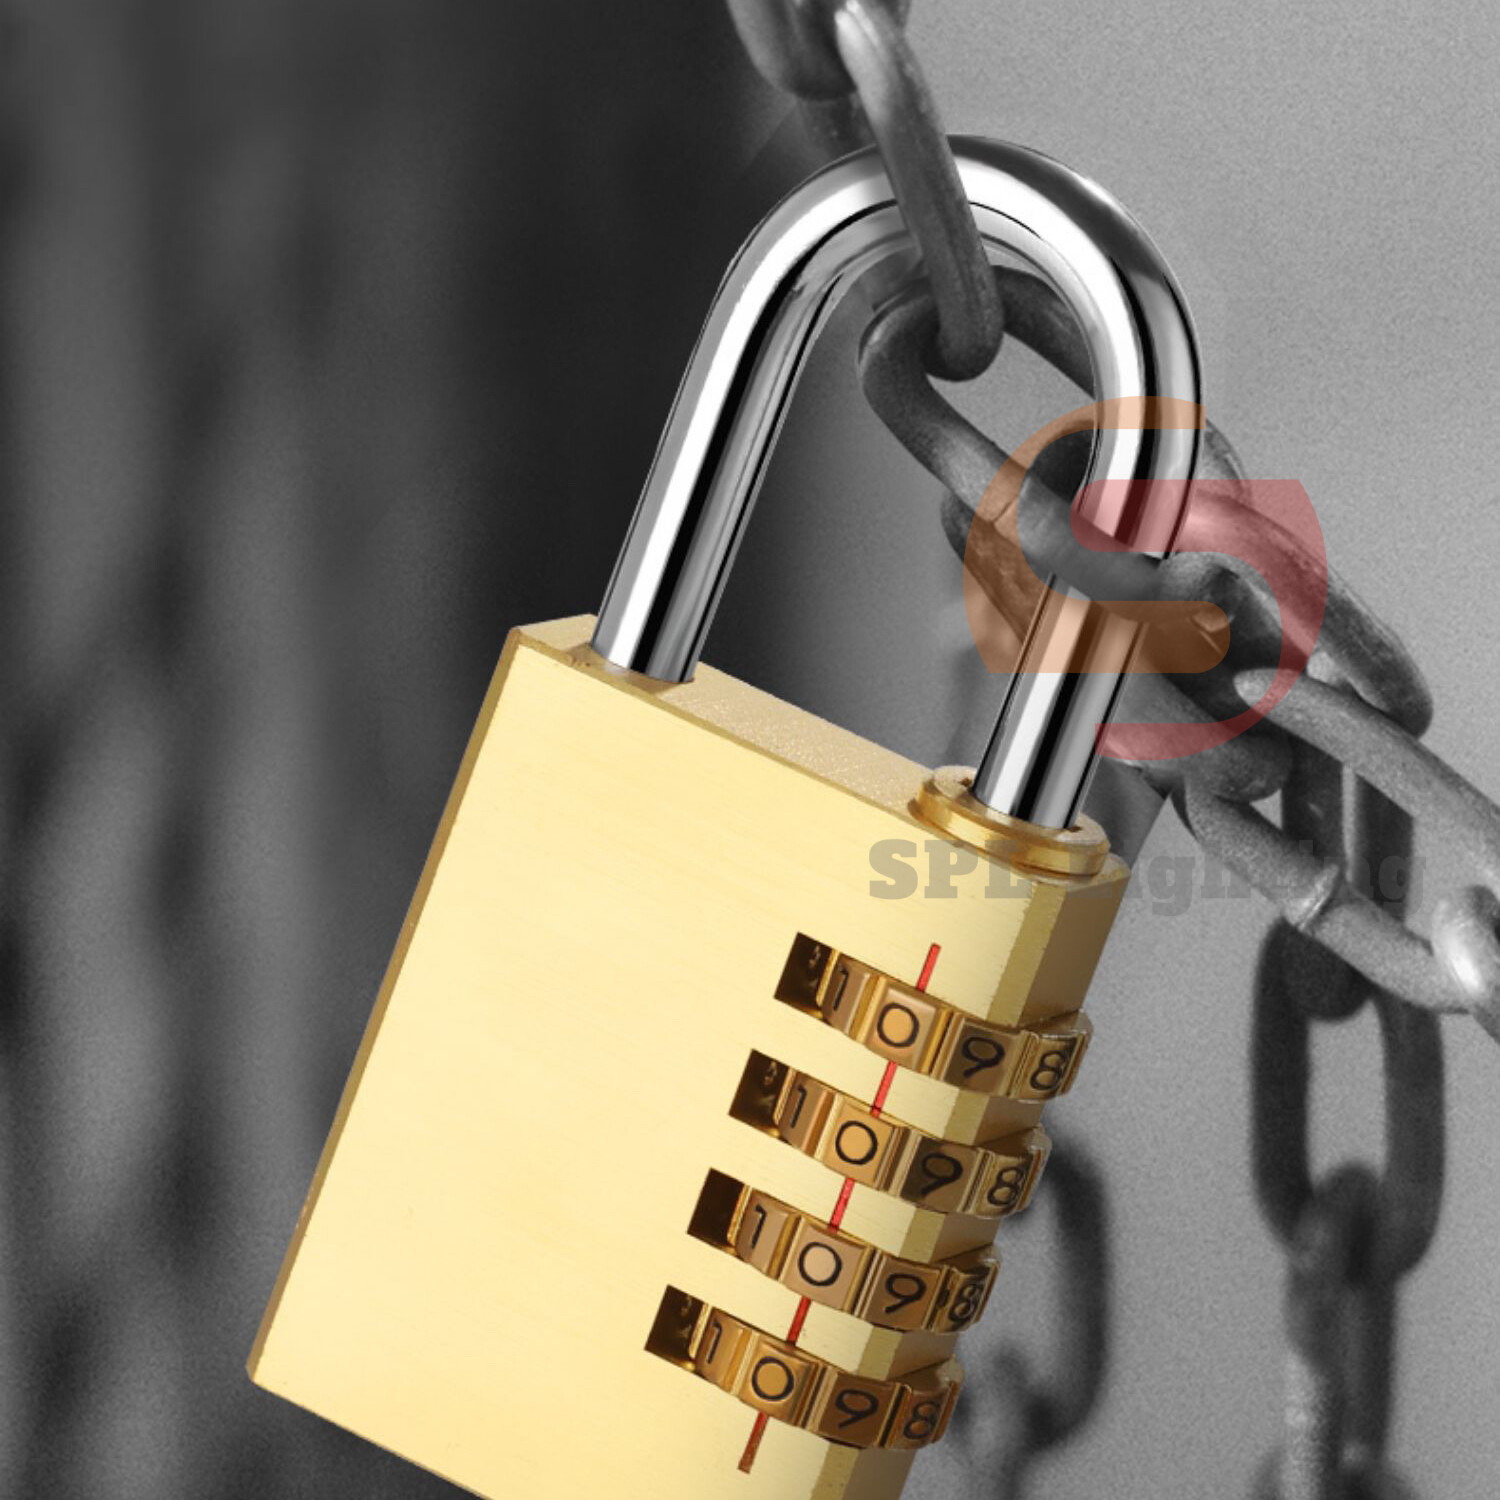 กุญแจล็อครหัสเนื้อทองแดง 4 หลักรวมรหัสผ่านกุญแจความปลอดภัยกระเป๋า